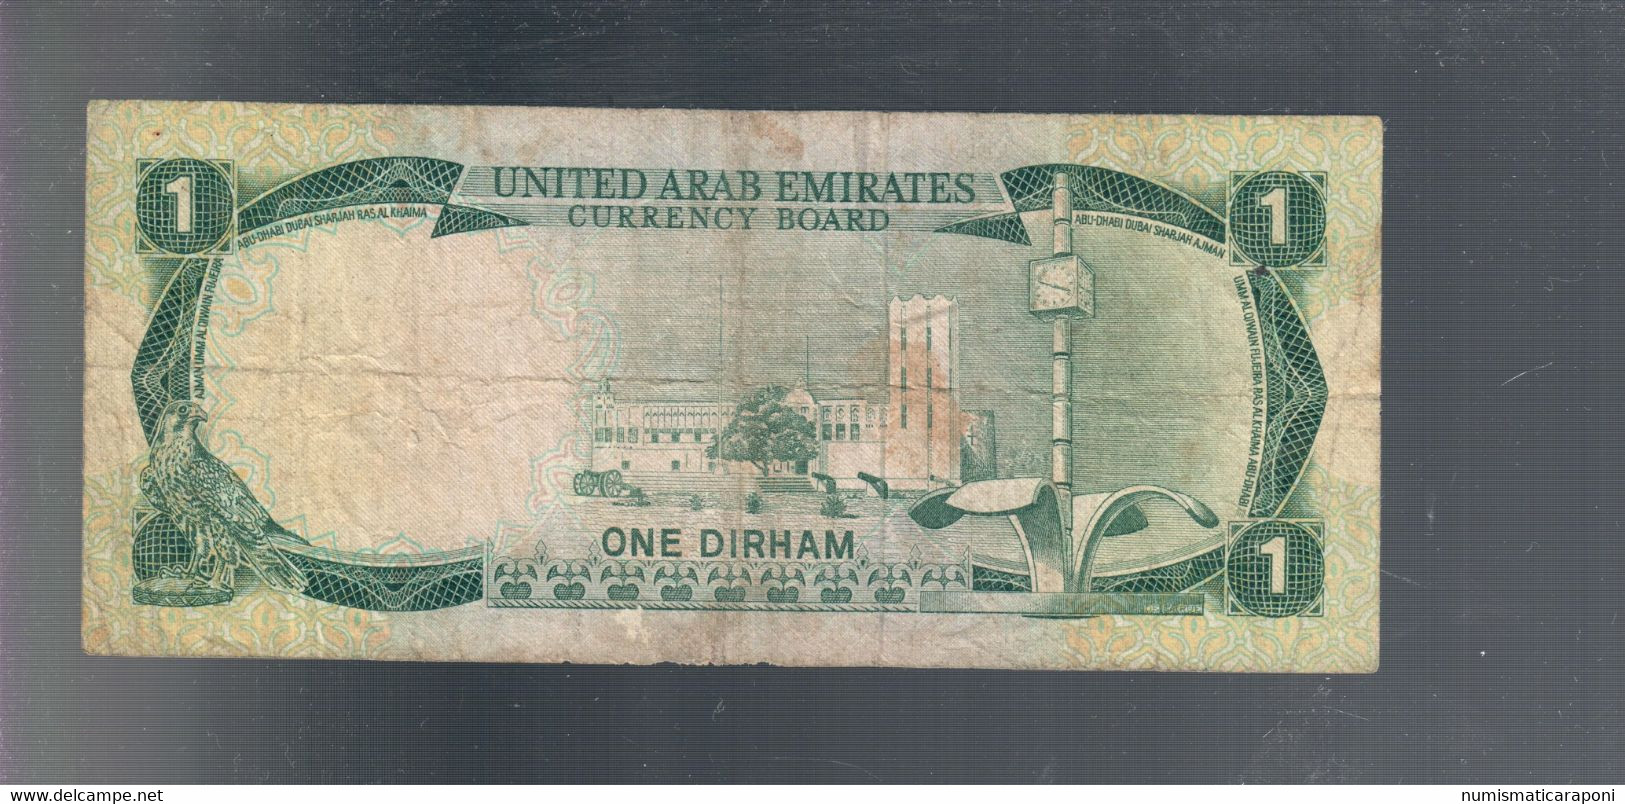 Emirats Arabes Unis United Arab Emirates 1 Dirham ND 1973 Pick#1  LOTTO 1901 - United Arab Emirates